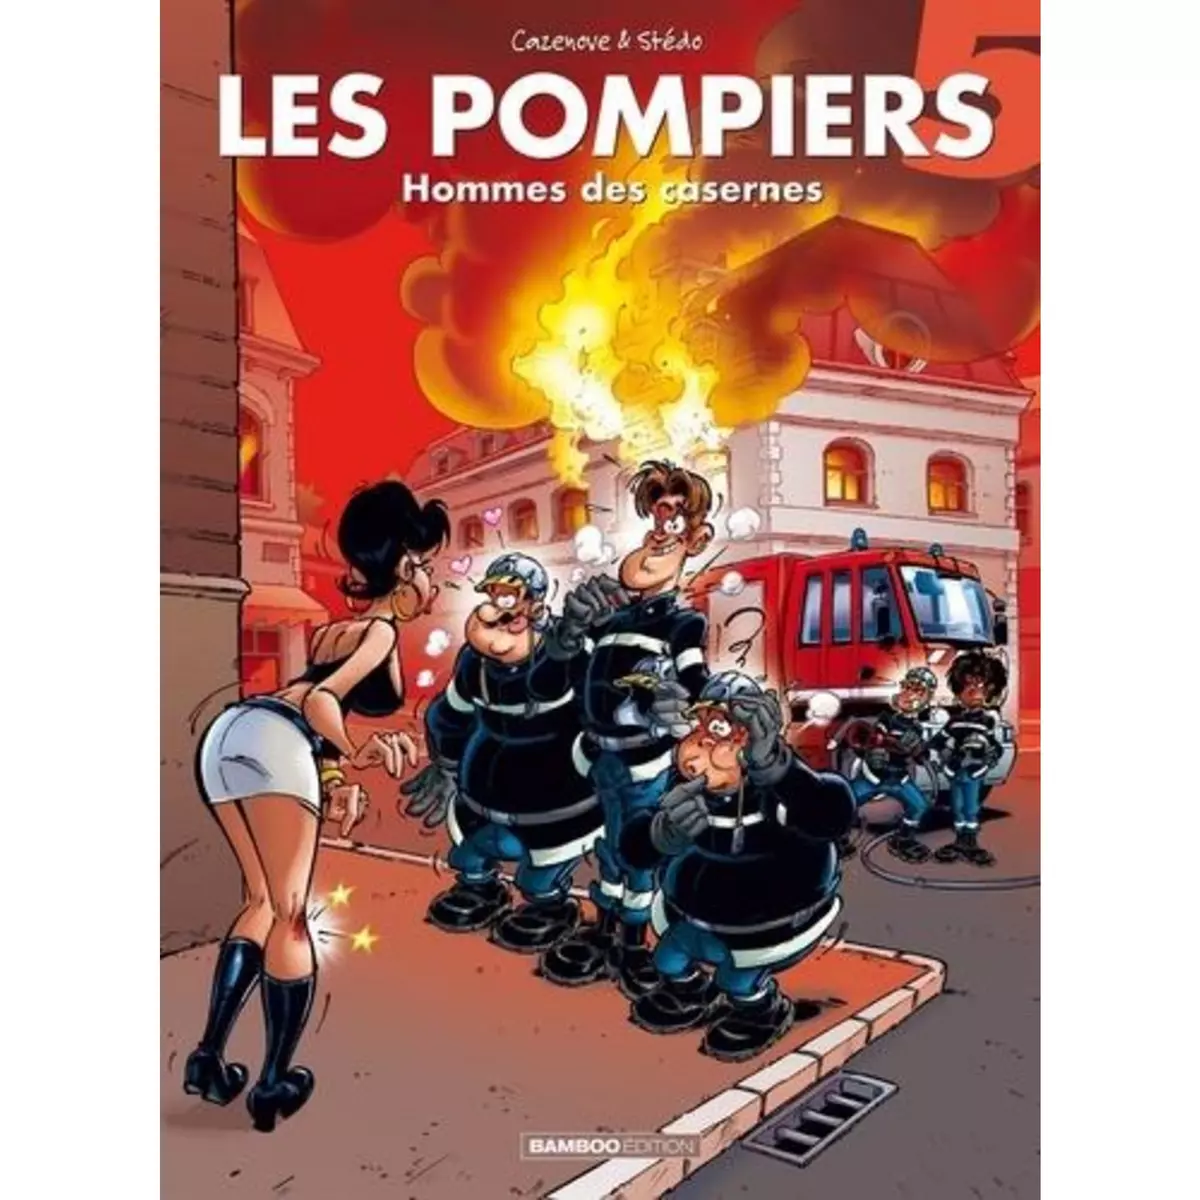  LES POMPIERS TOME 5 : HOMME DES CASERNES, Stédo